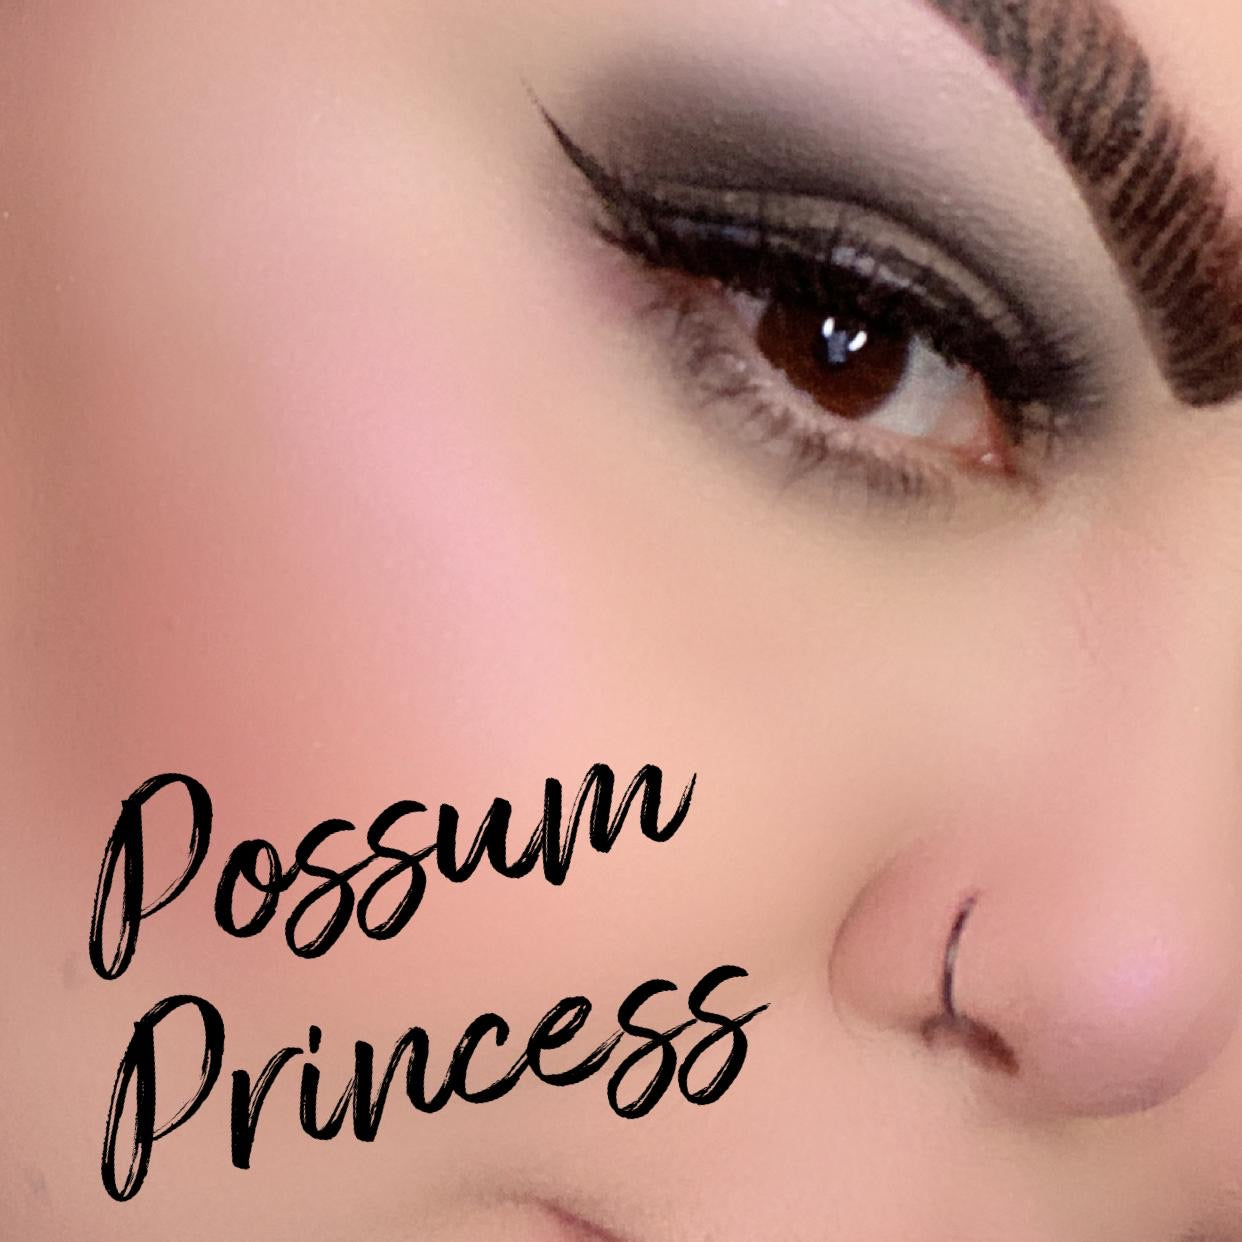 Possum Princess